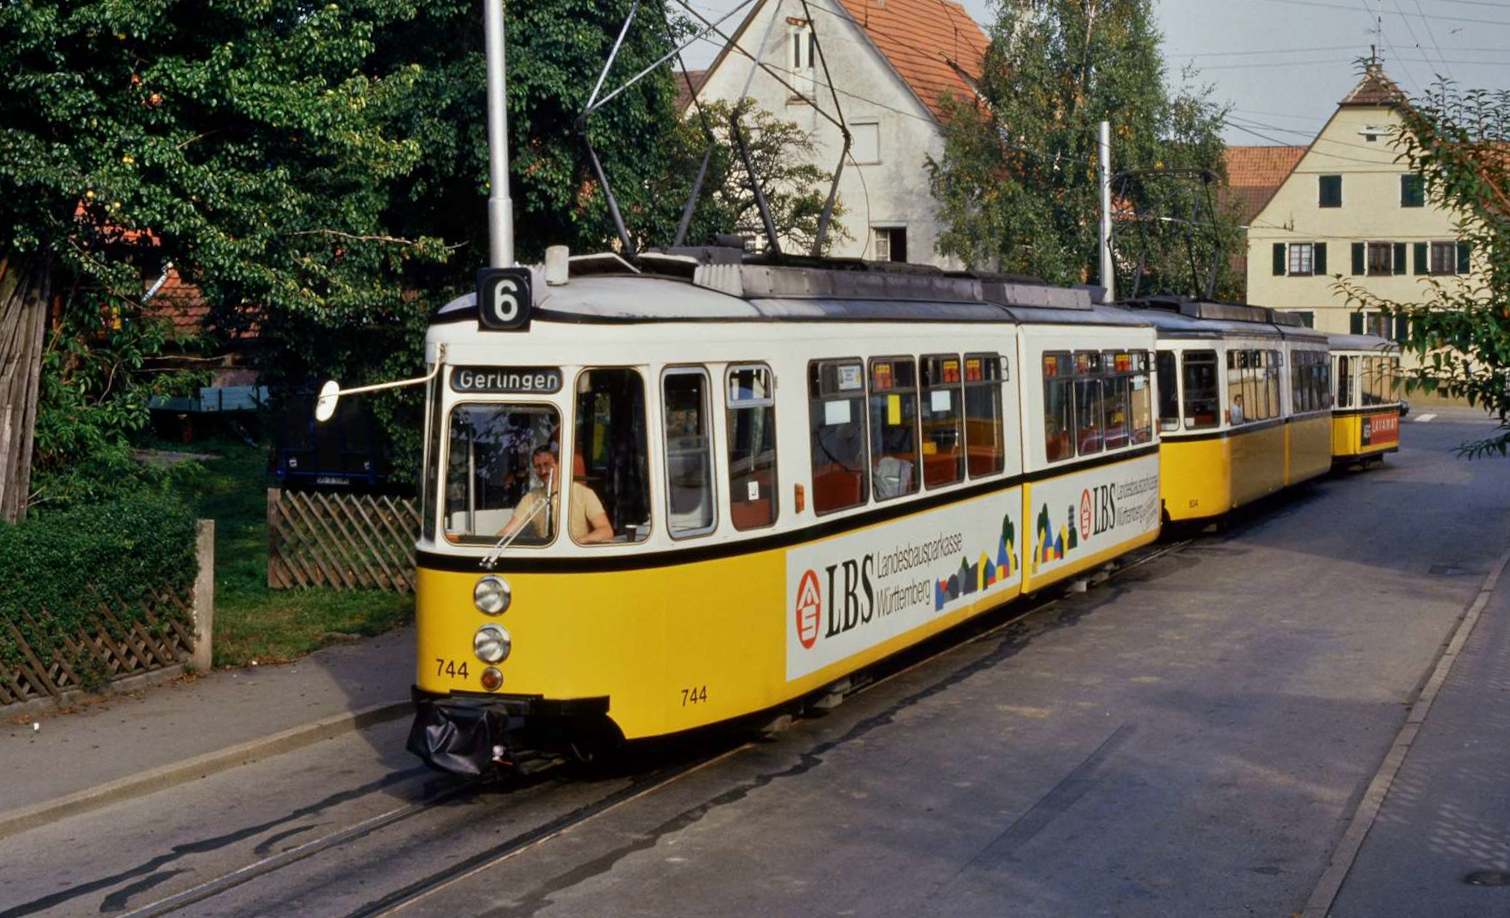 Echterdingen bei Stuttgart ist eine eigene Stadt und wurde lange Zeit durch Straßenbahnen der SSB mit Stuttgart verbunden. Hier nun eine Sonderfahrt mit verschiedenen Wagen der SSB, ein sehr rarer Straßenbahnzug mit drei Wagen, darunter der  Schiffchen  genannte Beiwagen (Typ B2), der vor längerer Zeit nur noch auf der Linie 3 zwischen Vaihingen und Plieningen eingesetzt wurde.
Datum: 19.09.1987